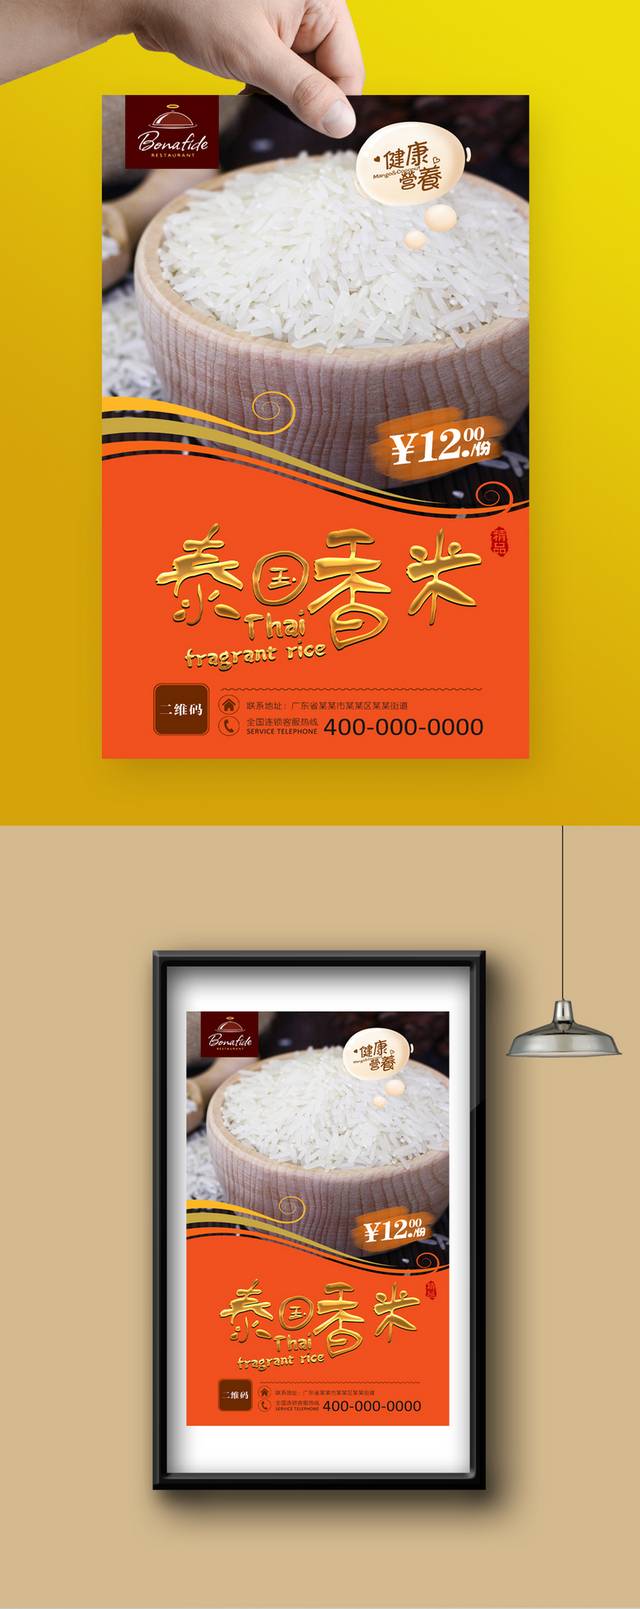 高档香米宣传海报设计模板